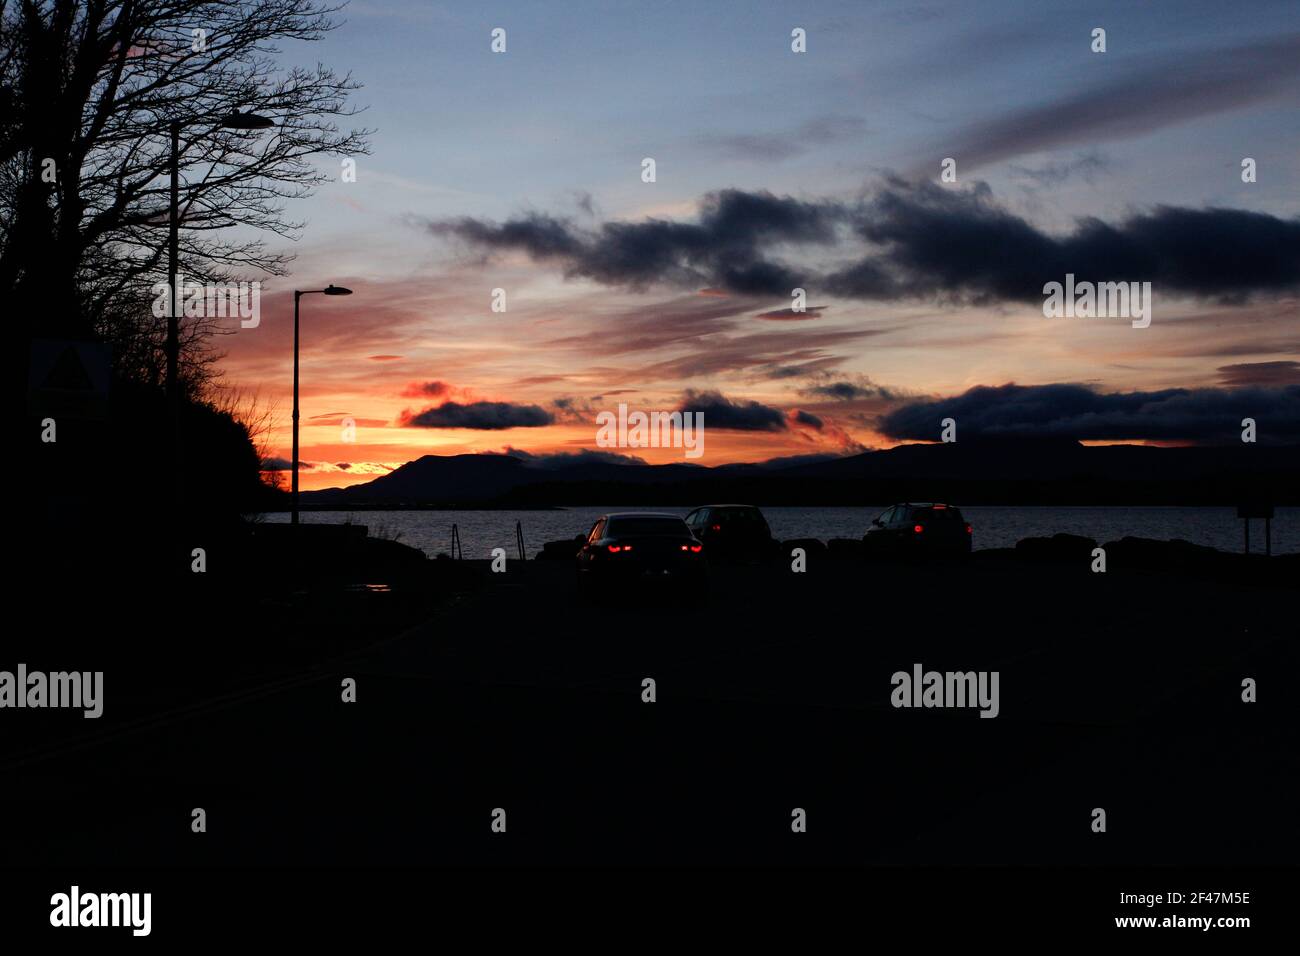 Magnifique coucher de soleil capturé le 18 mars. Bantry, Co Cork. Irlande Banque D'Images